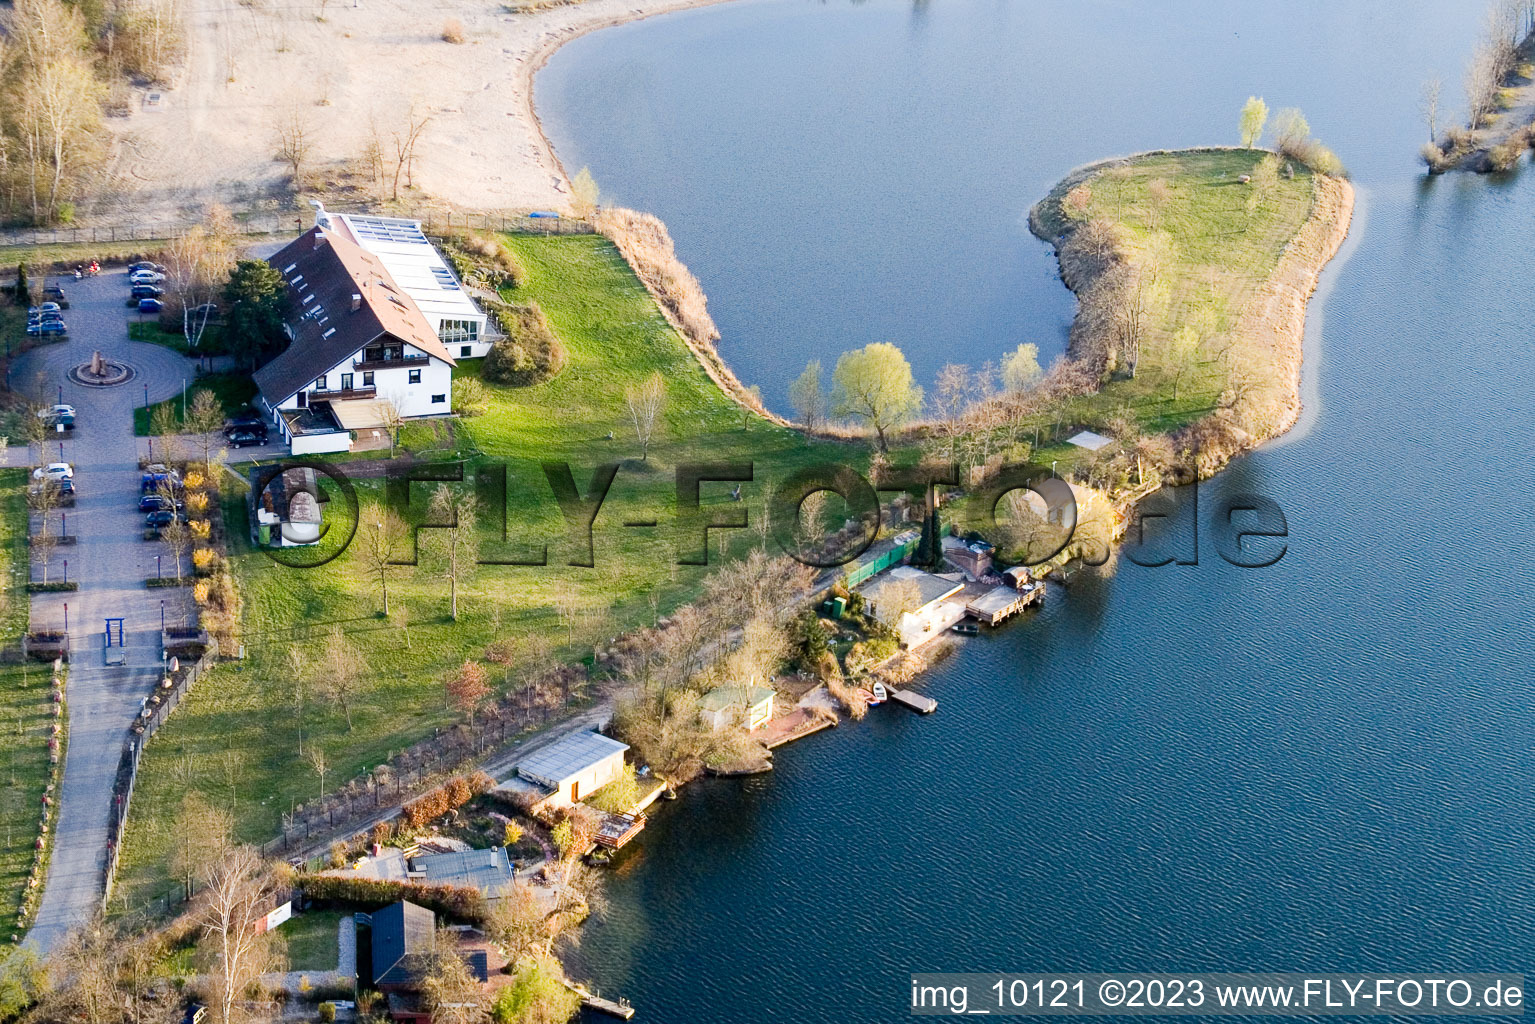 Drohnenbild von Altrip, Naherholungsgebiet Blaue Adria im Bundesland Rheinland-Pfalz, Deutschland